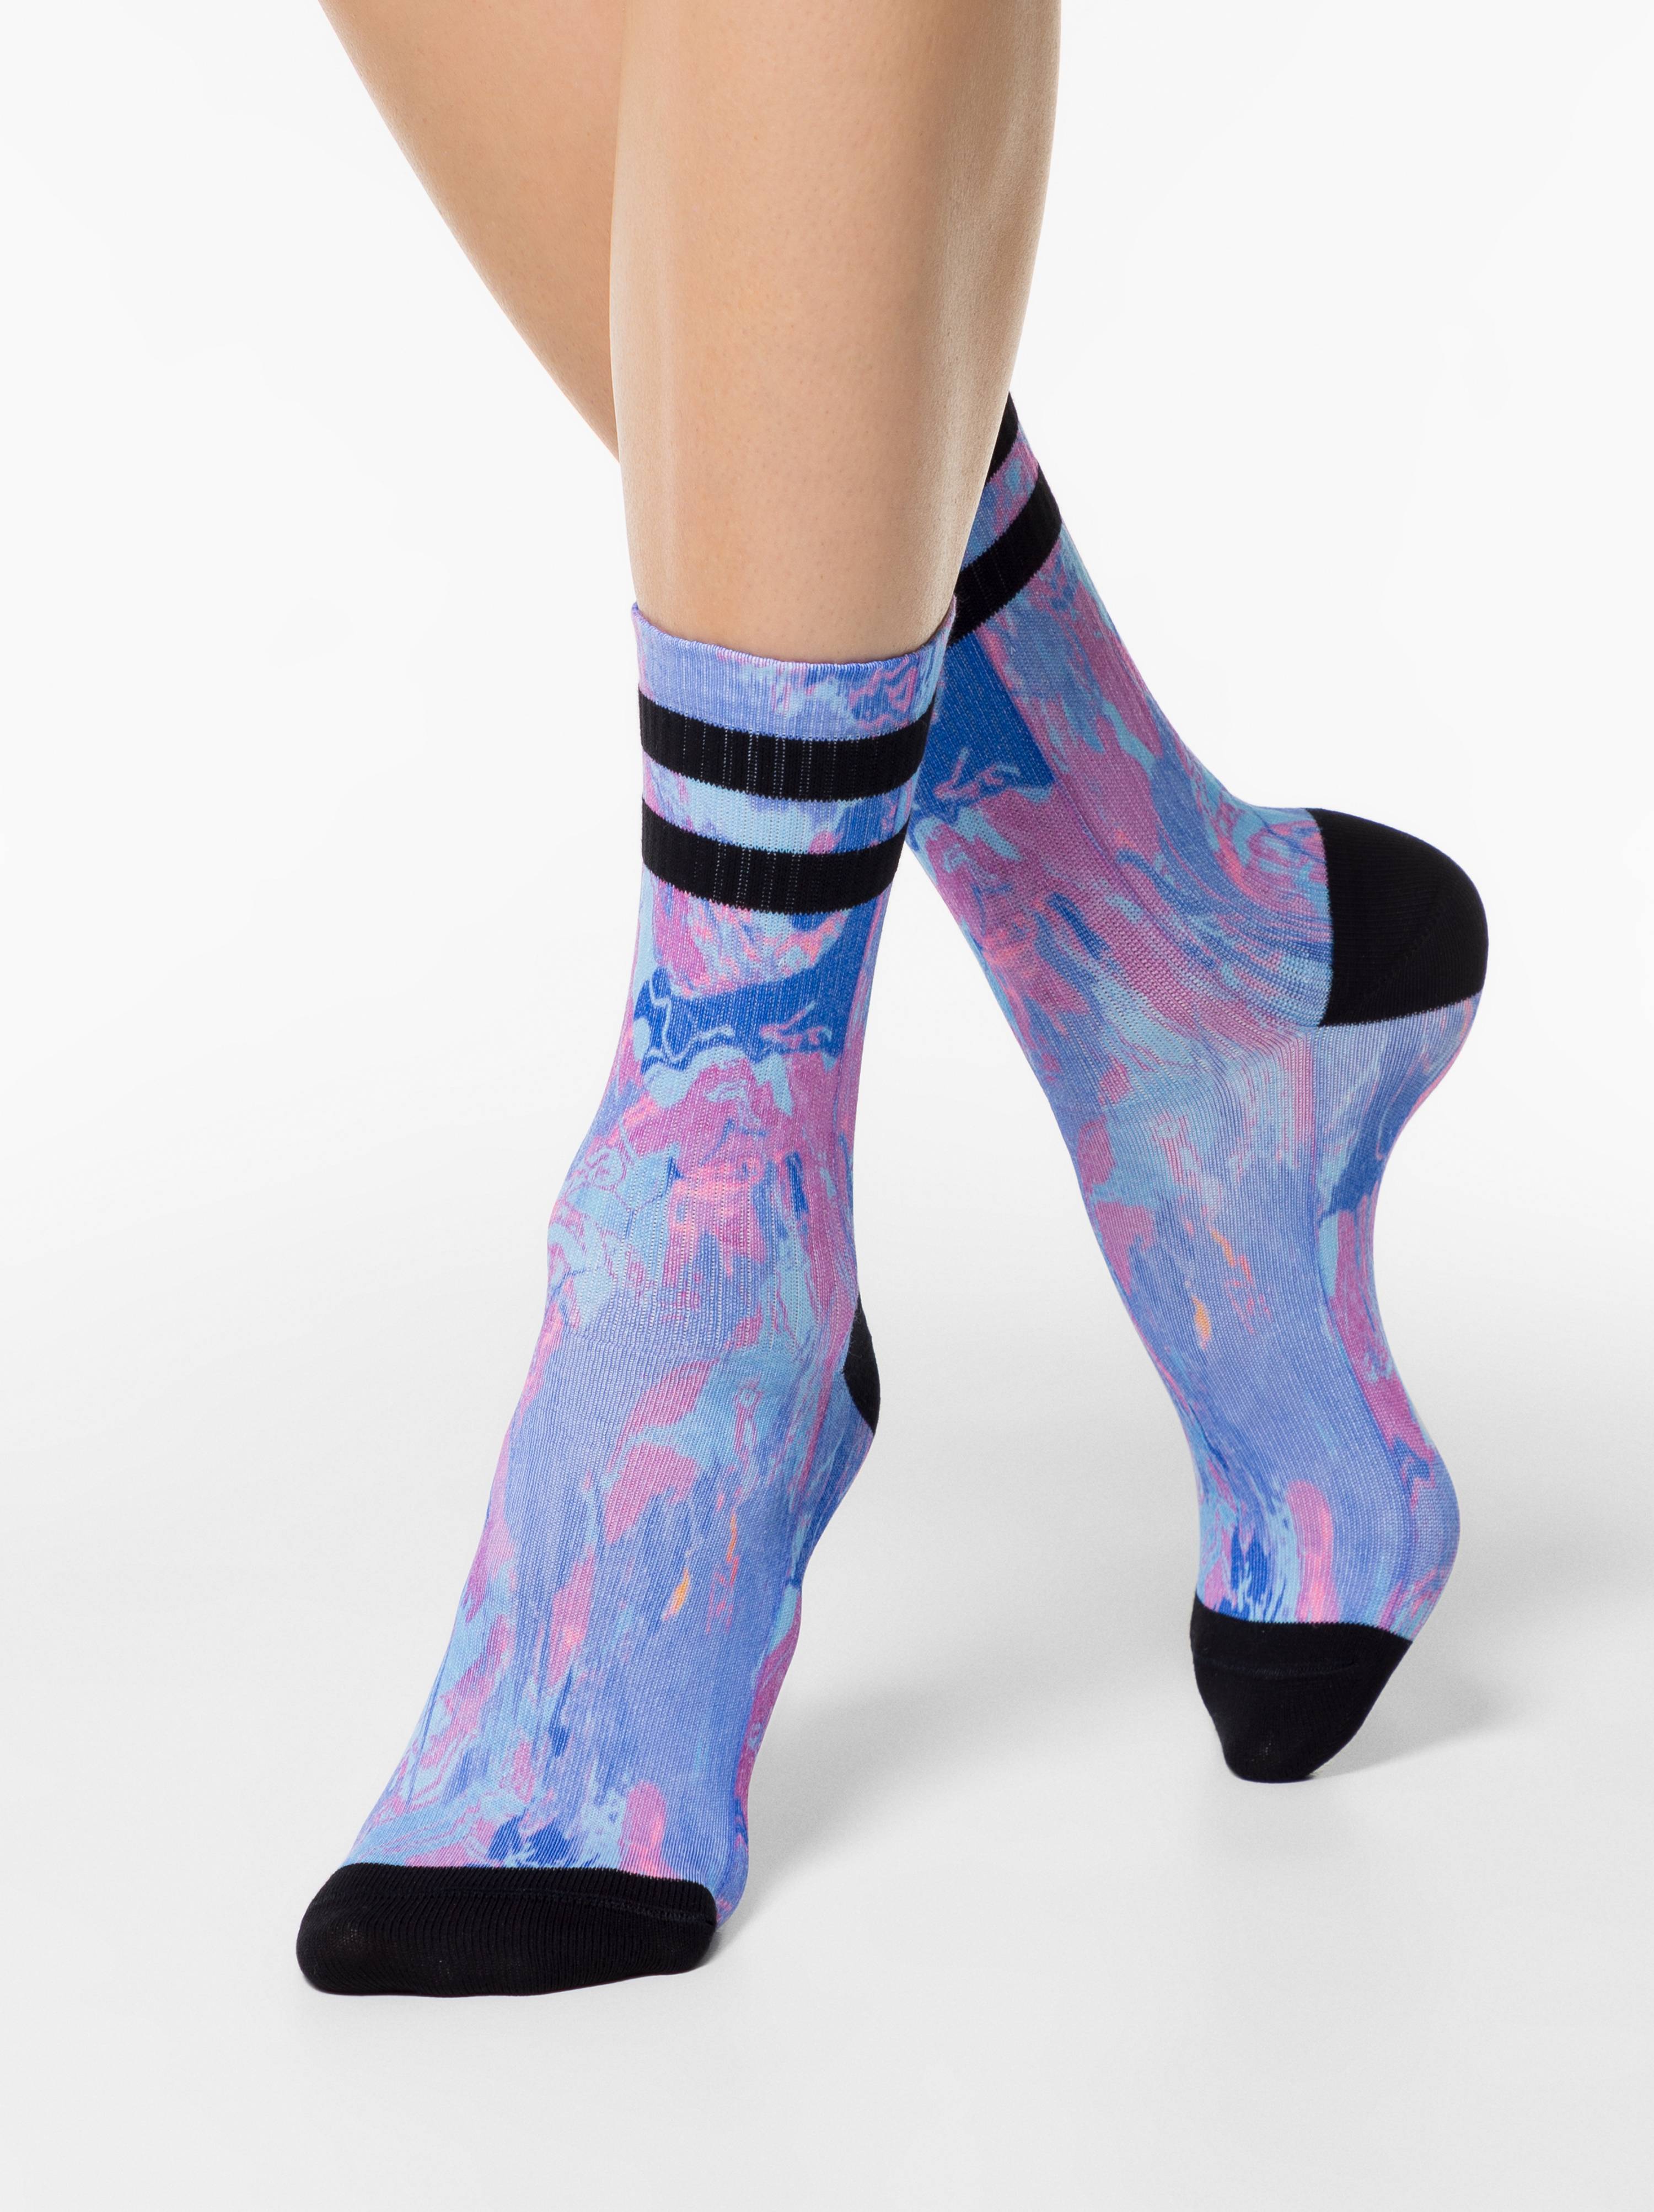 Удлиненные носки женские. Вытянутые носки. Носки жен. Fantasy 20с-12/1сп. Носки под лифчик.